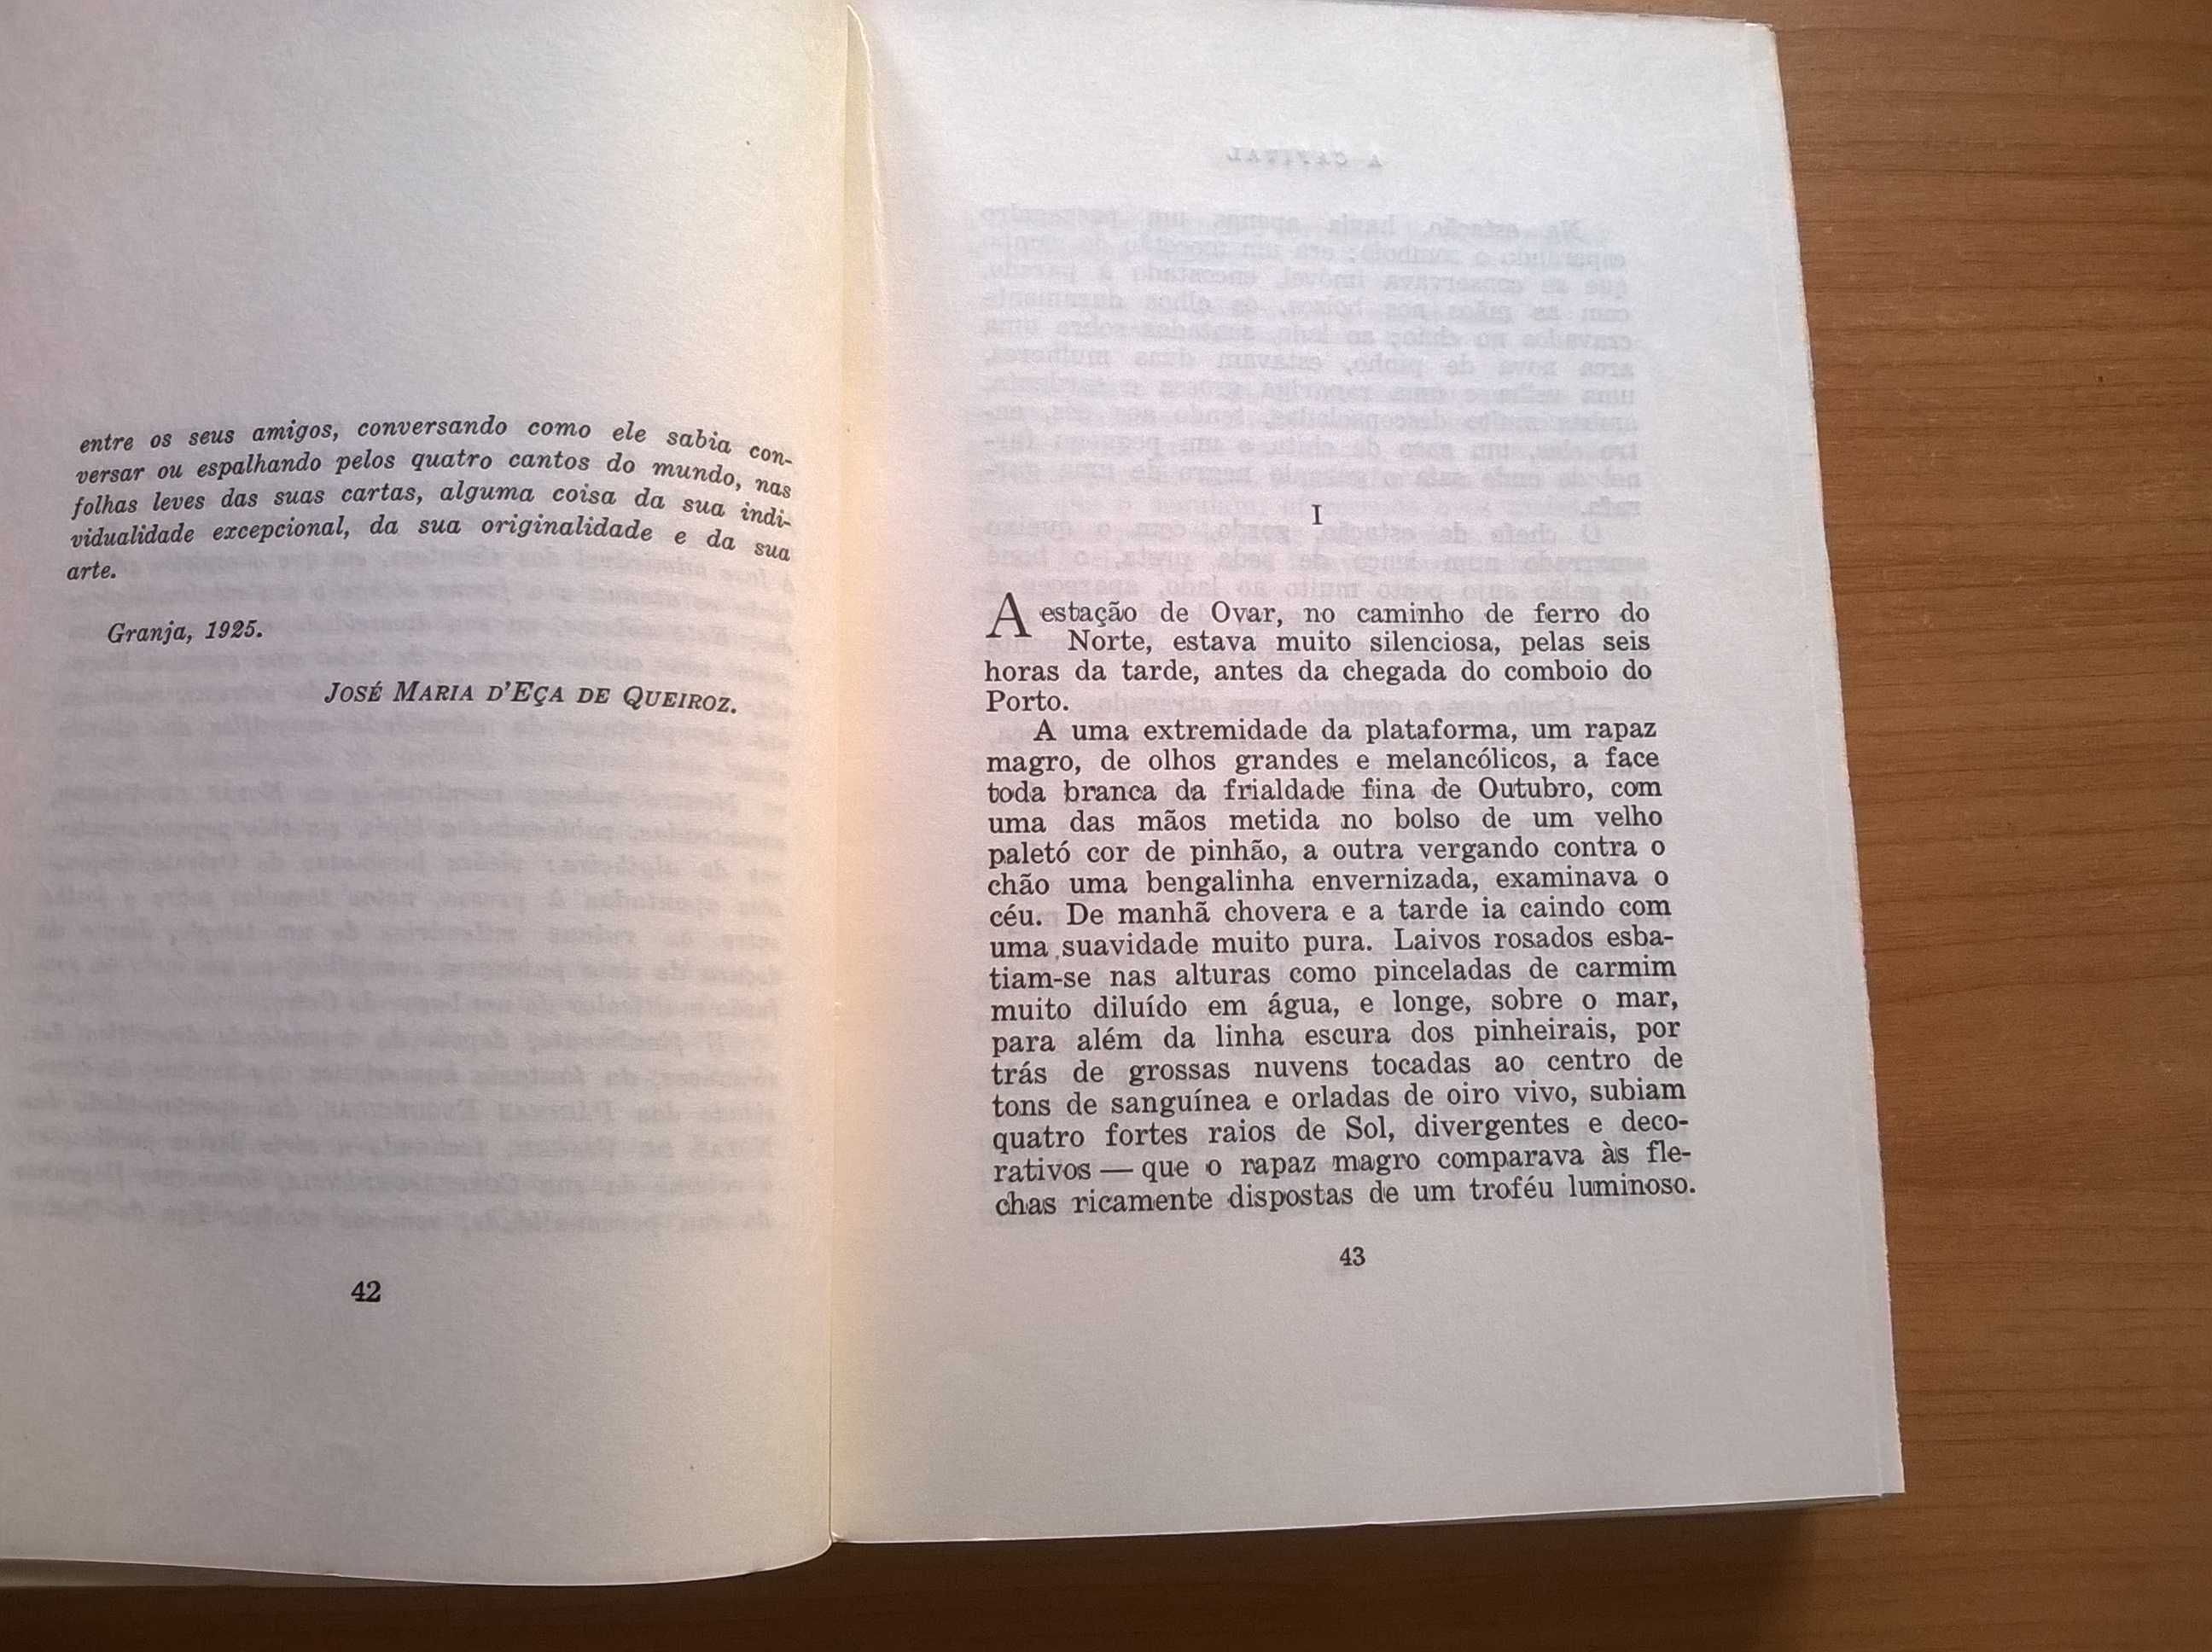 "A Capital" (4.ª ed. 1929) - Eça de Queiroz (portes grátis)